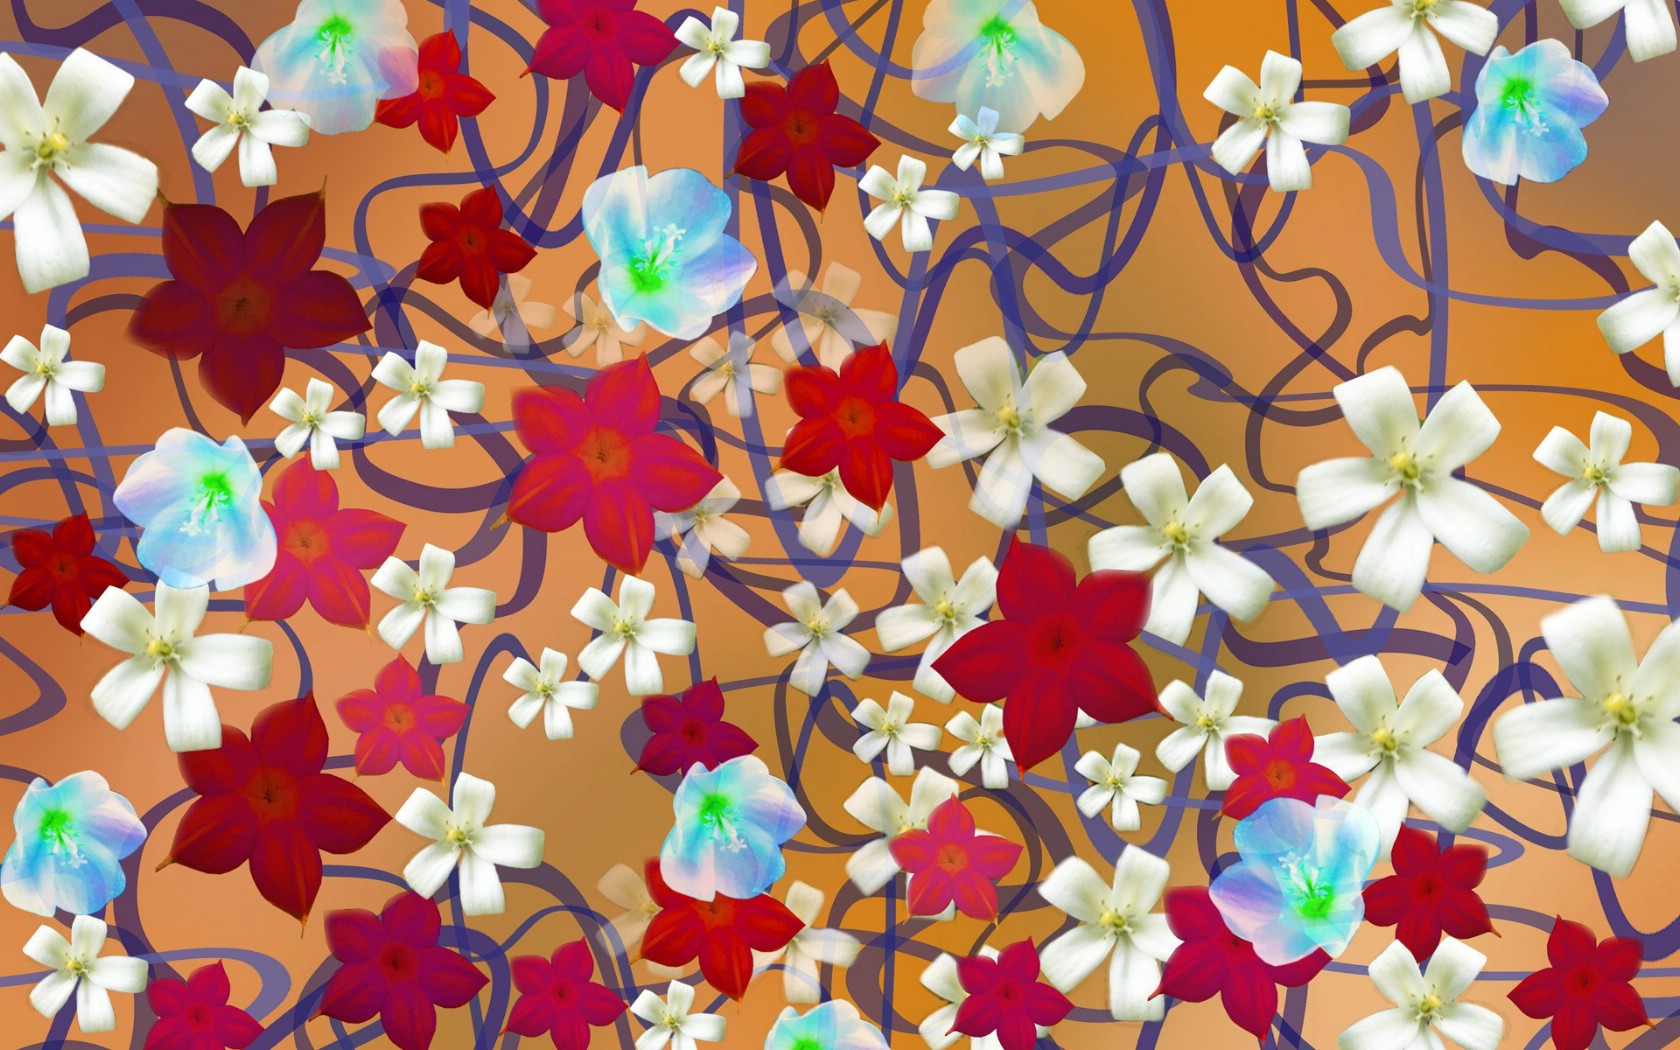 壁纸1680x1050 CG花卉插画壁纸壁纸 数码合成花卉插画壁纸 数码合成花卉插画图片 数码合成花卉插画素材 花卉壁纸 花卉图库 花卉图片素材桌面壁纸